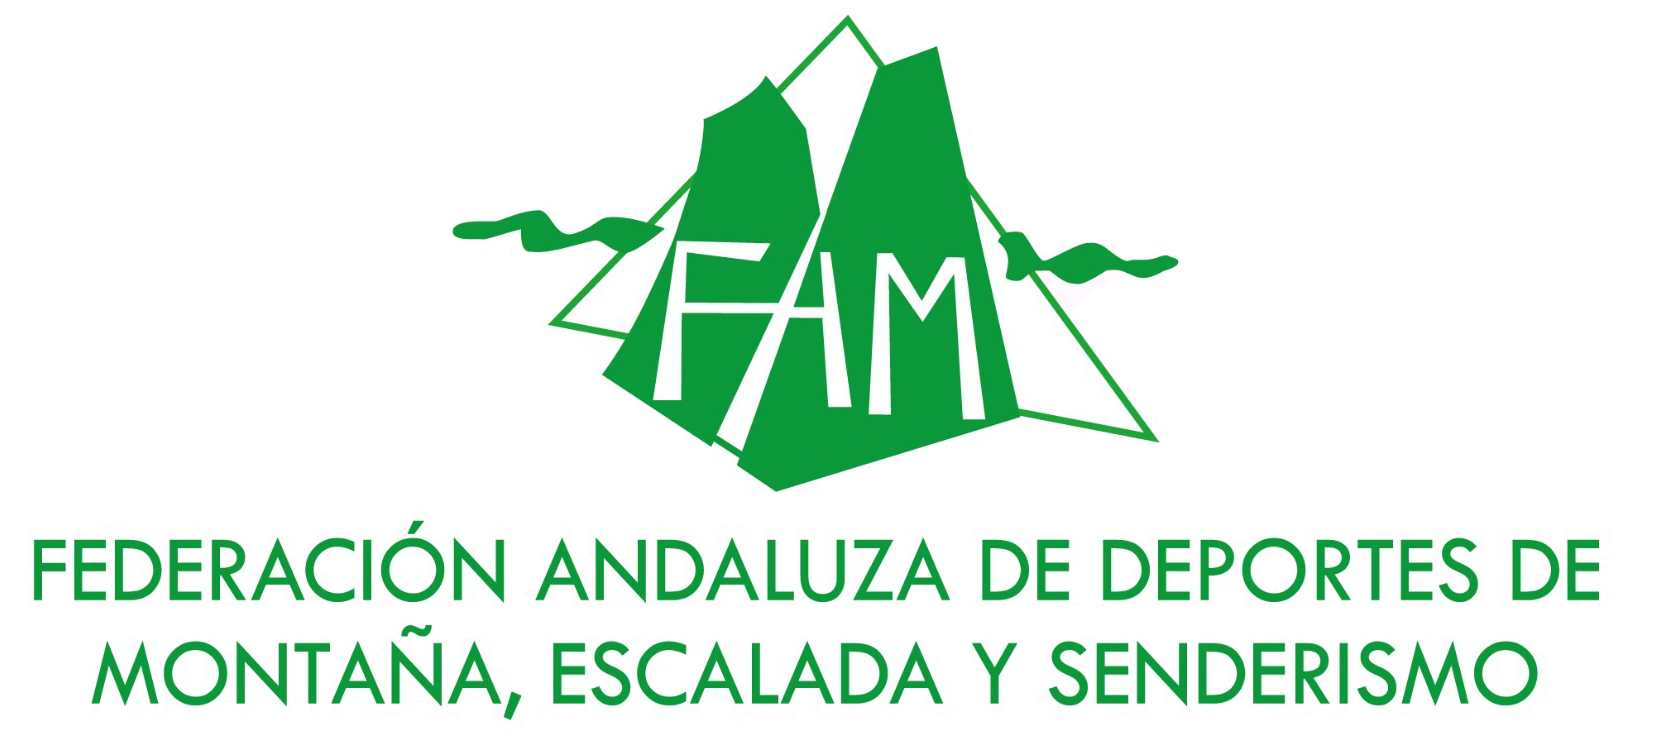 Eventos Federación Andaluza de Montañismo